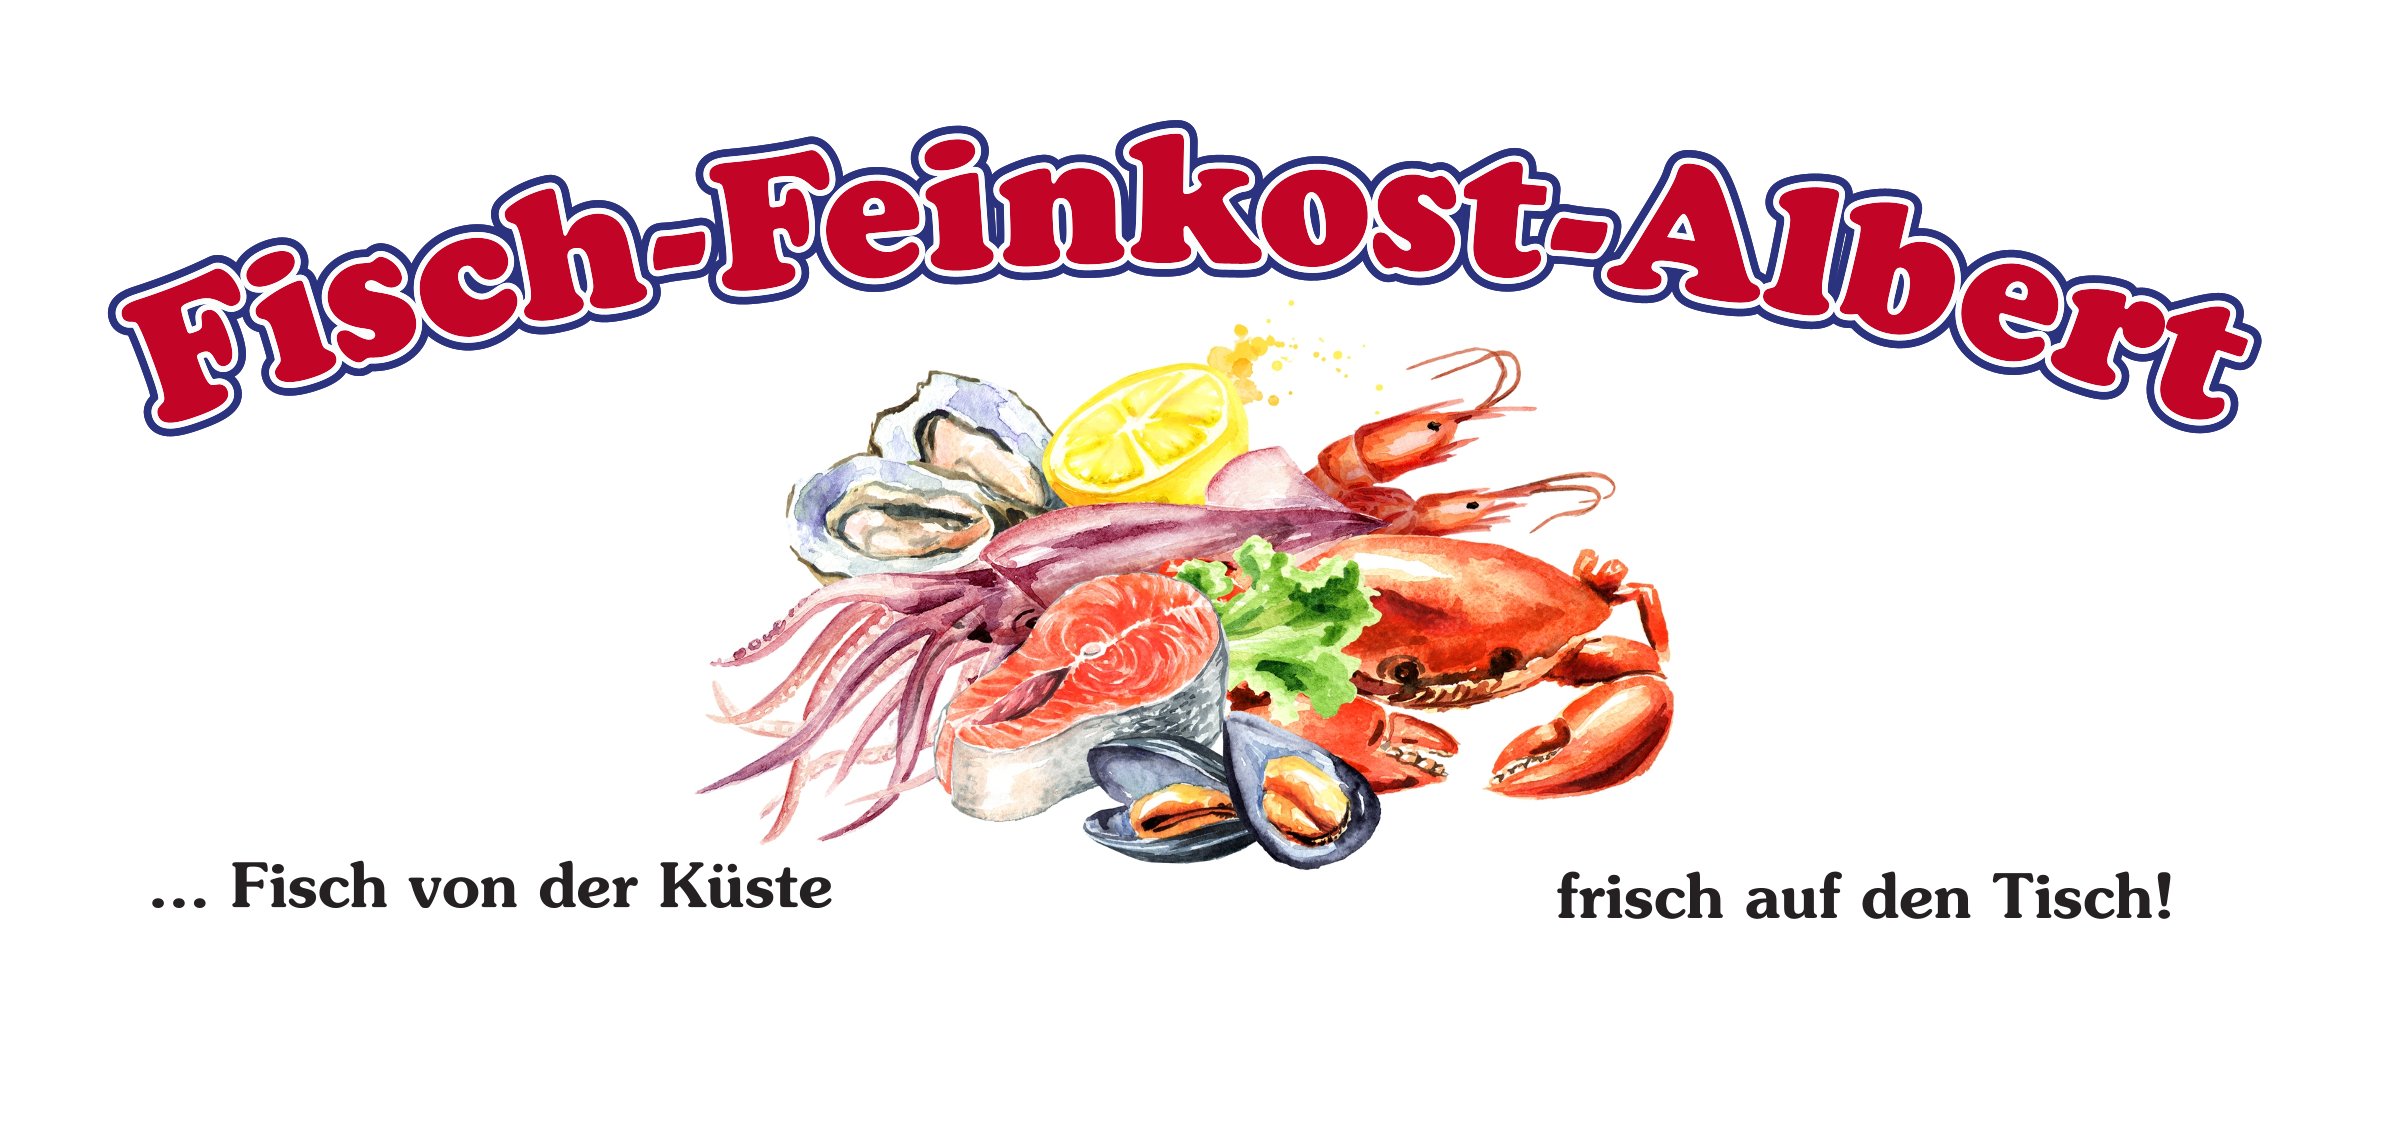 (c) Fischfeinkost-albert.de